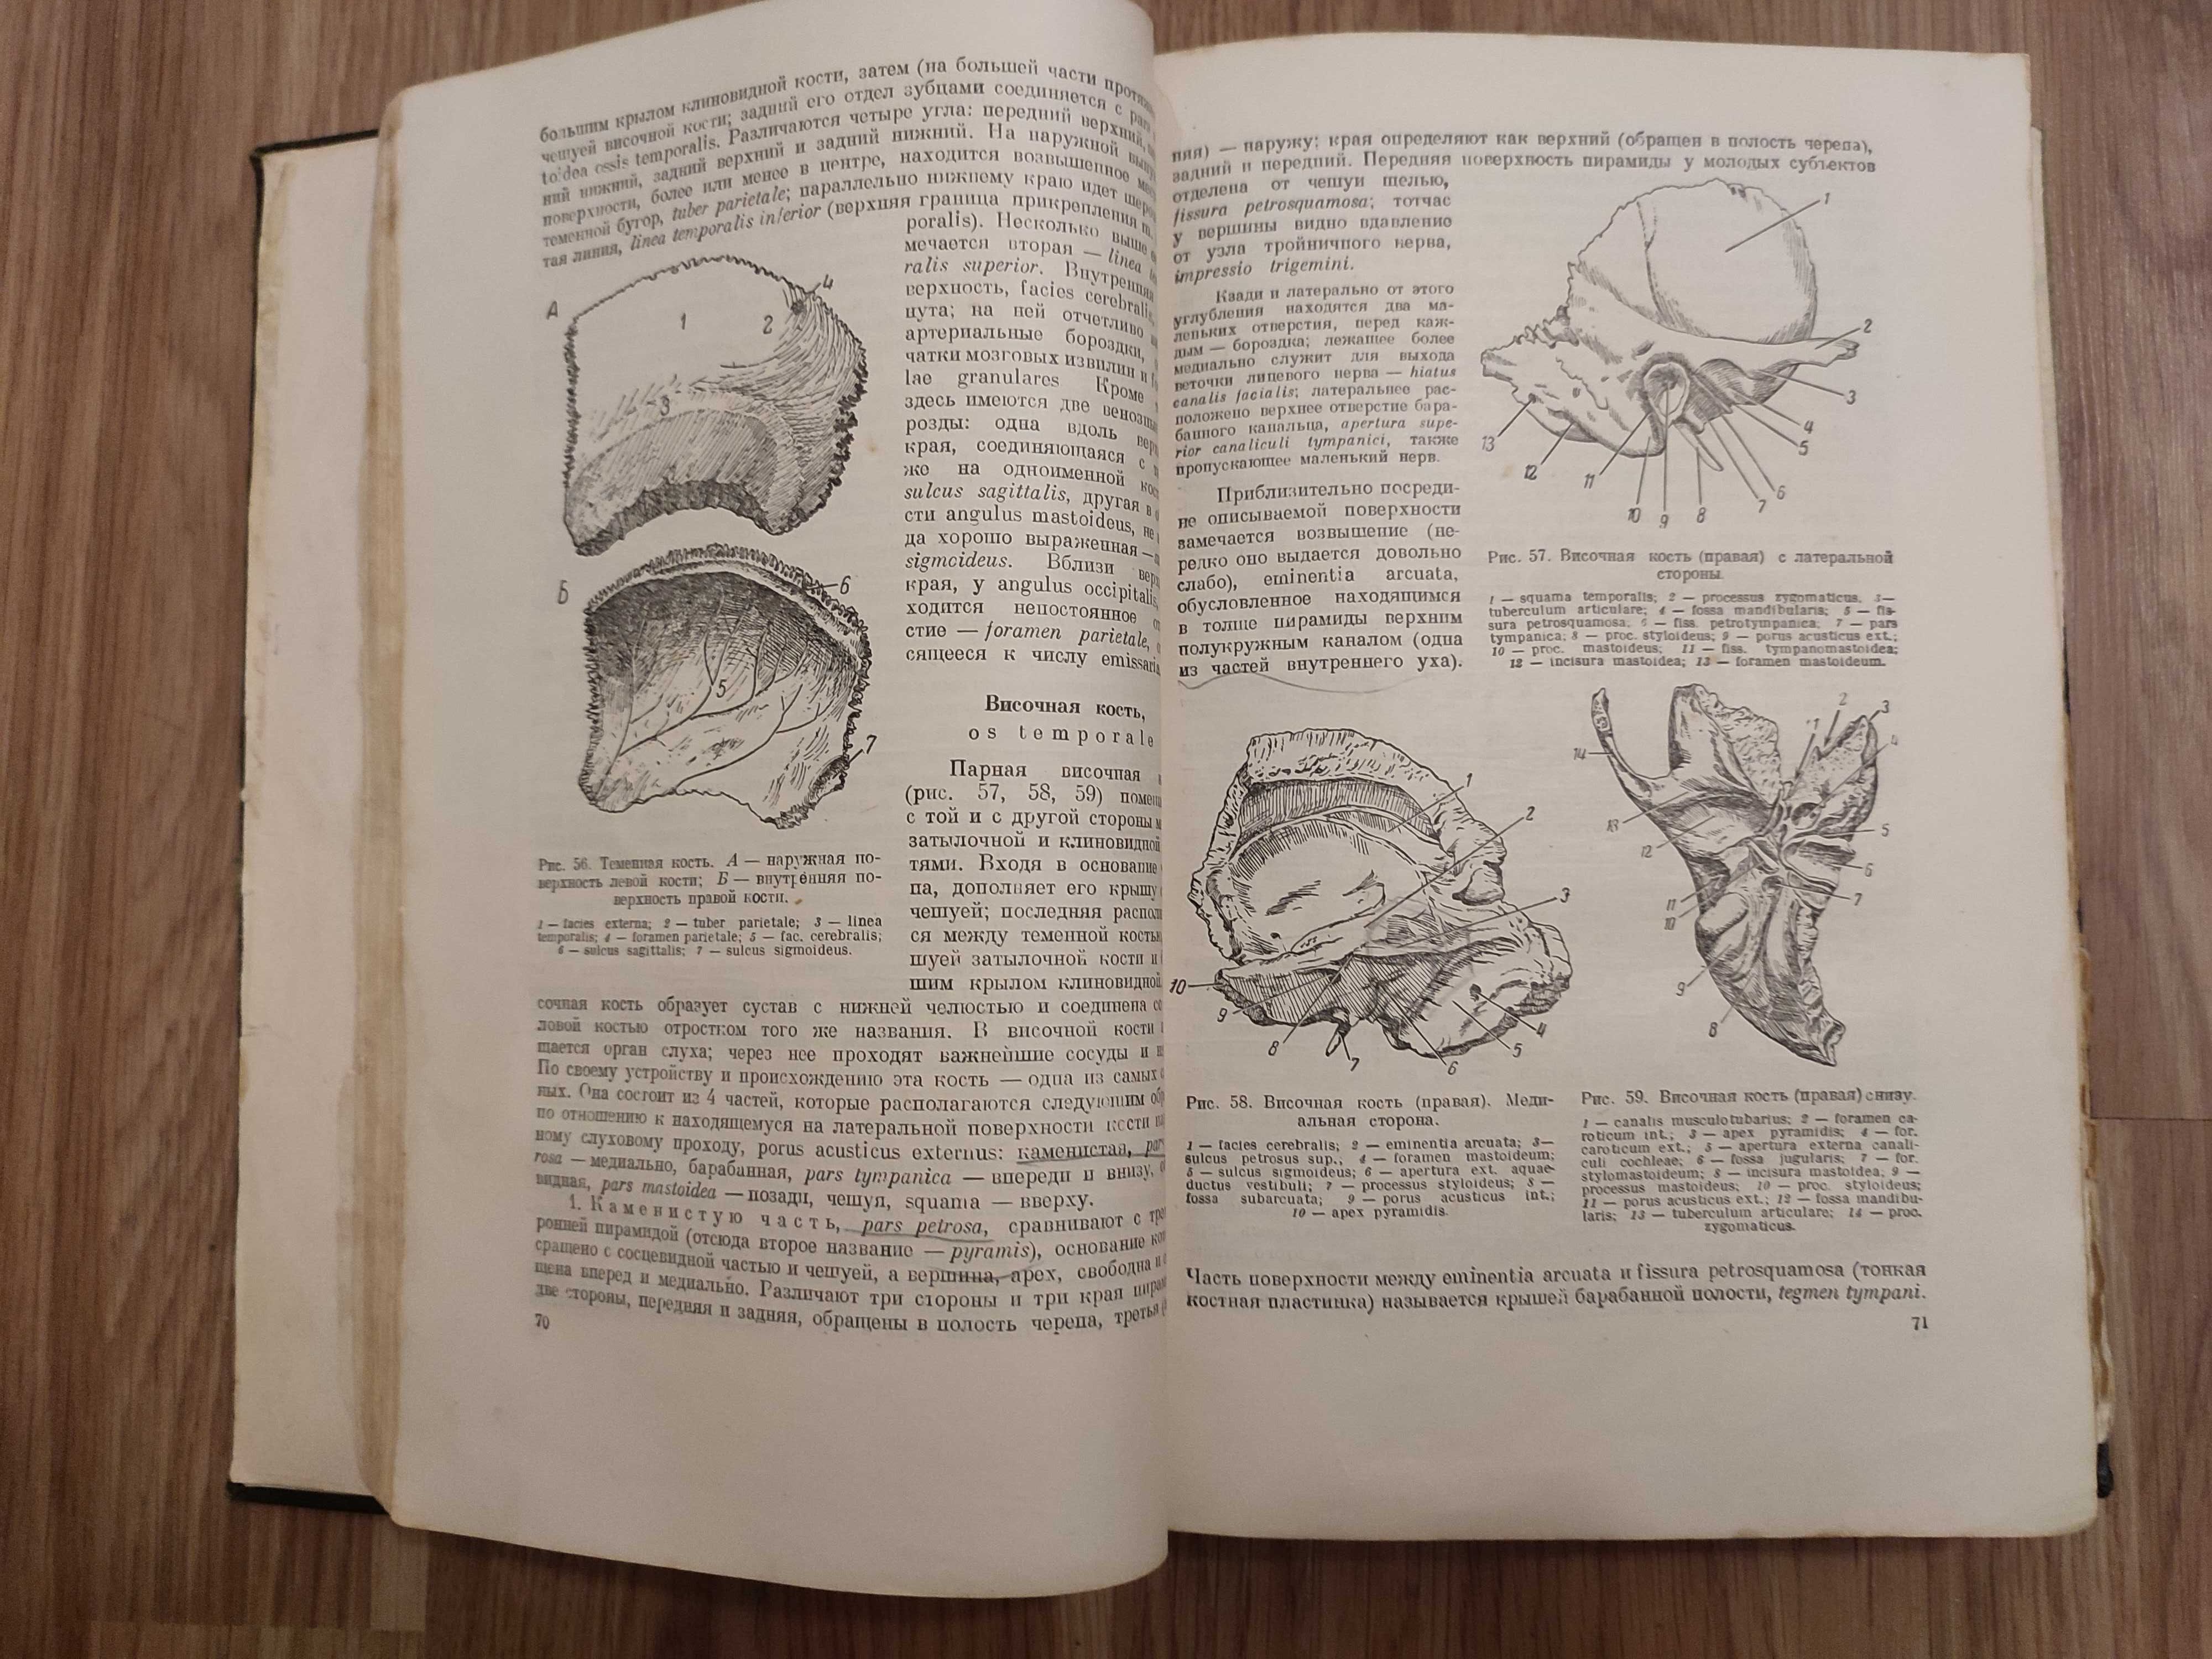 "Учебник нормальной анатомии человека",  Тонков В.Н., т.1, 1953 г